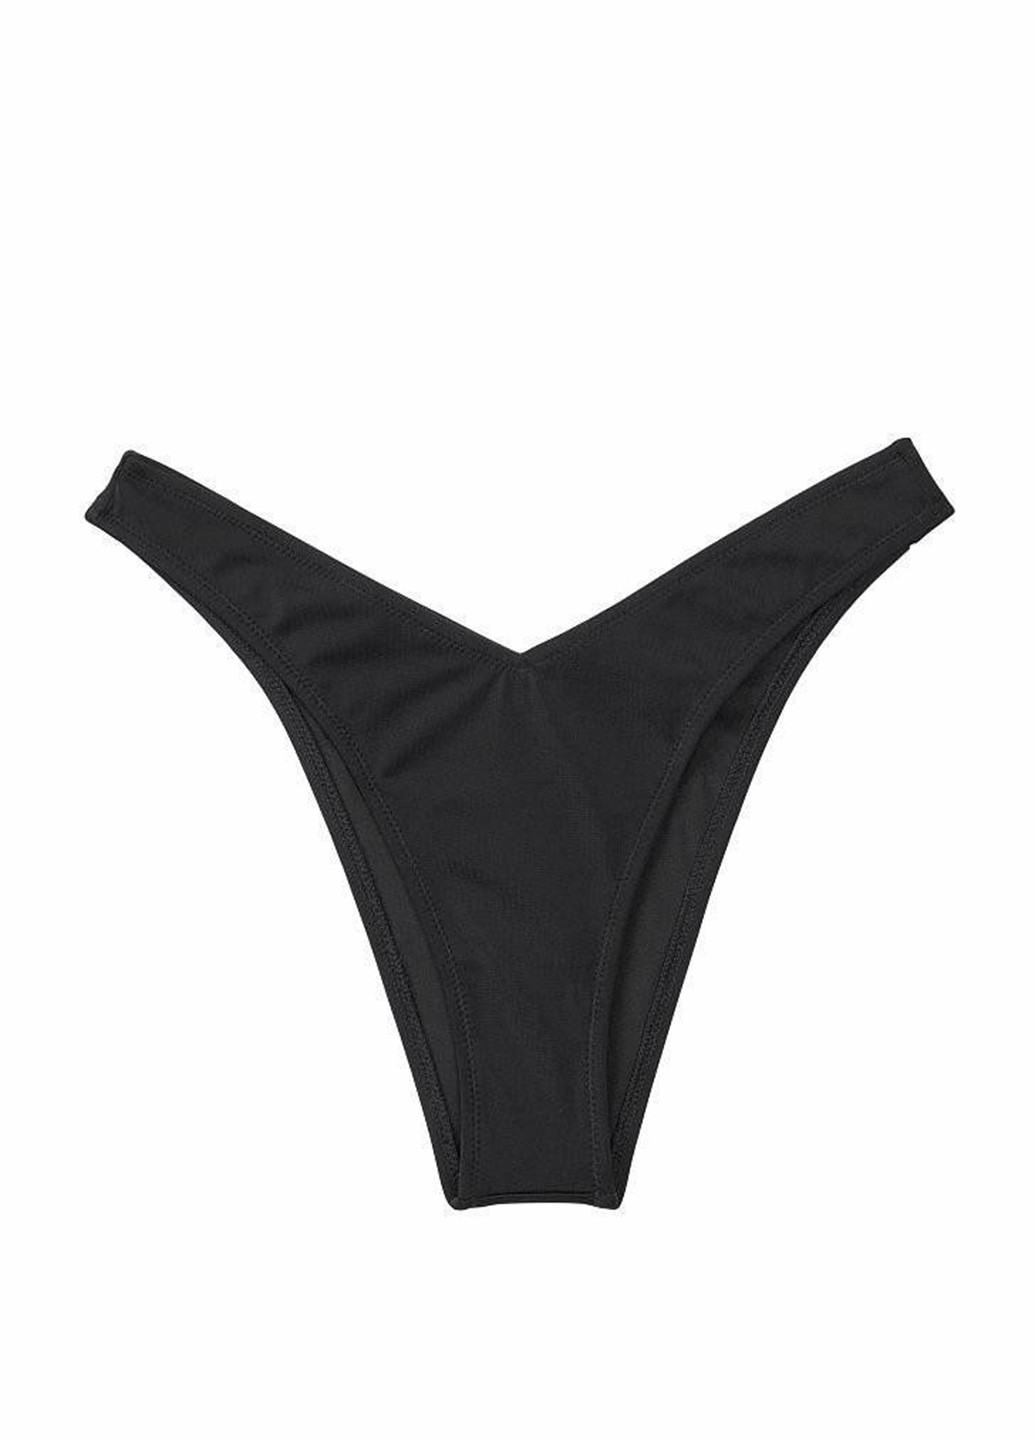 Черный летний купальник (лиф, трусики) бикини Victoria's Secret